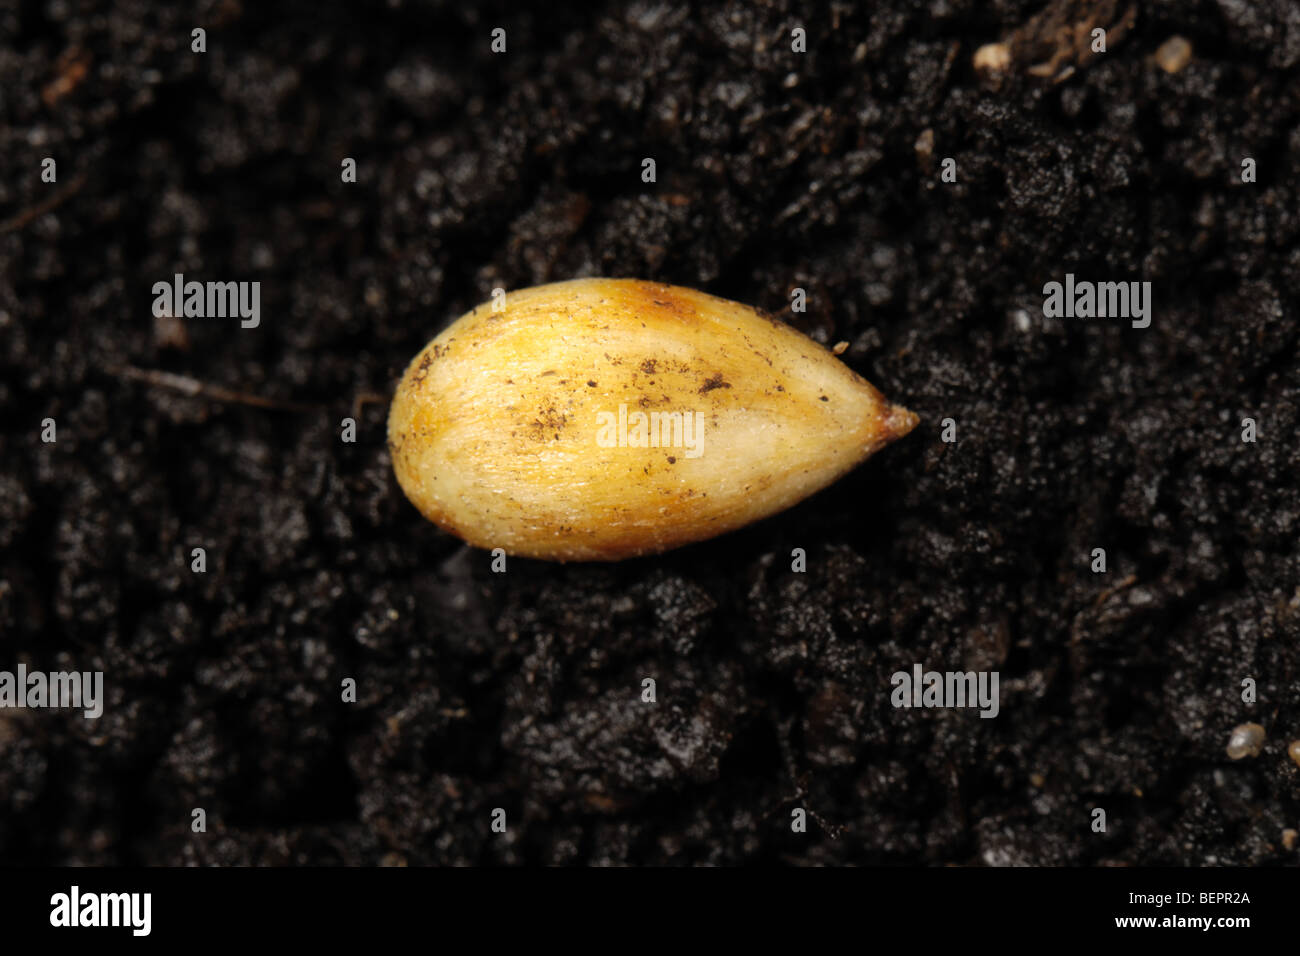 Descubrimiento de semillas de manzana en una superficie de suelo Foto de stock